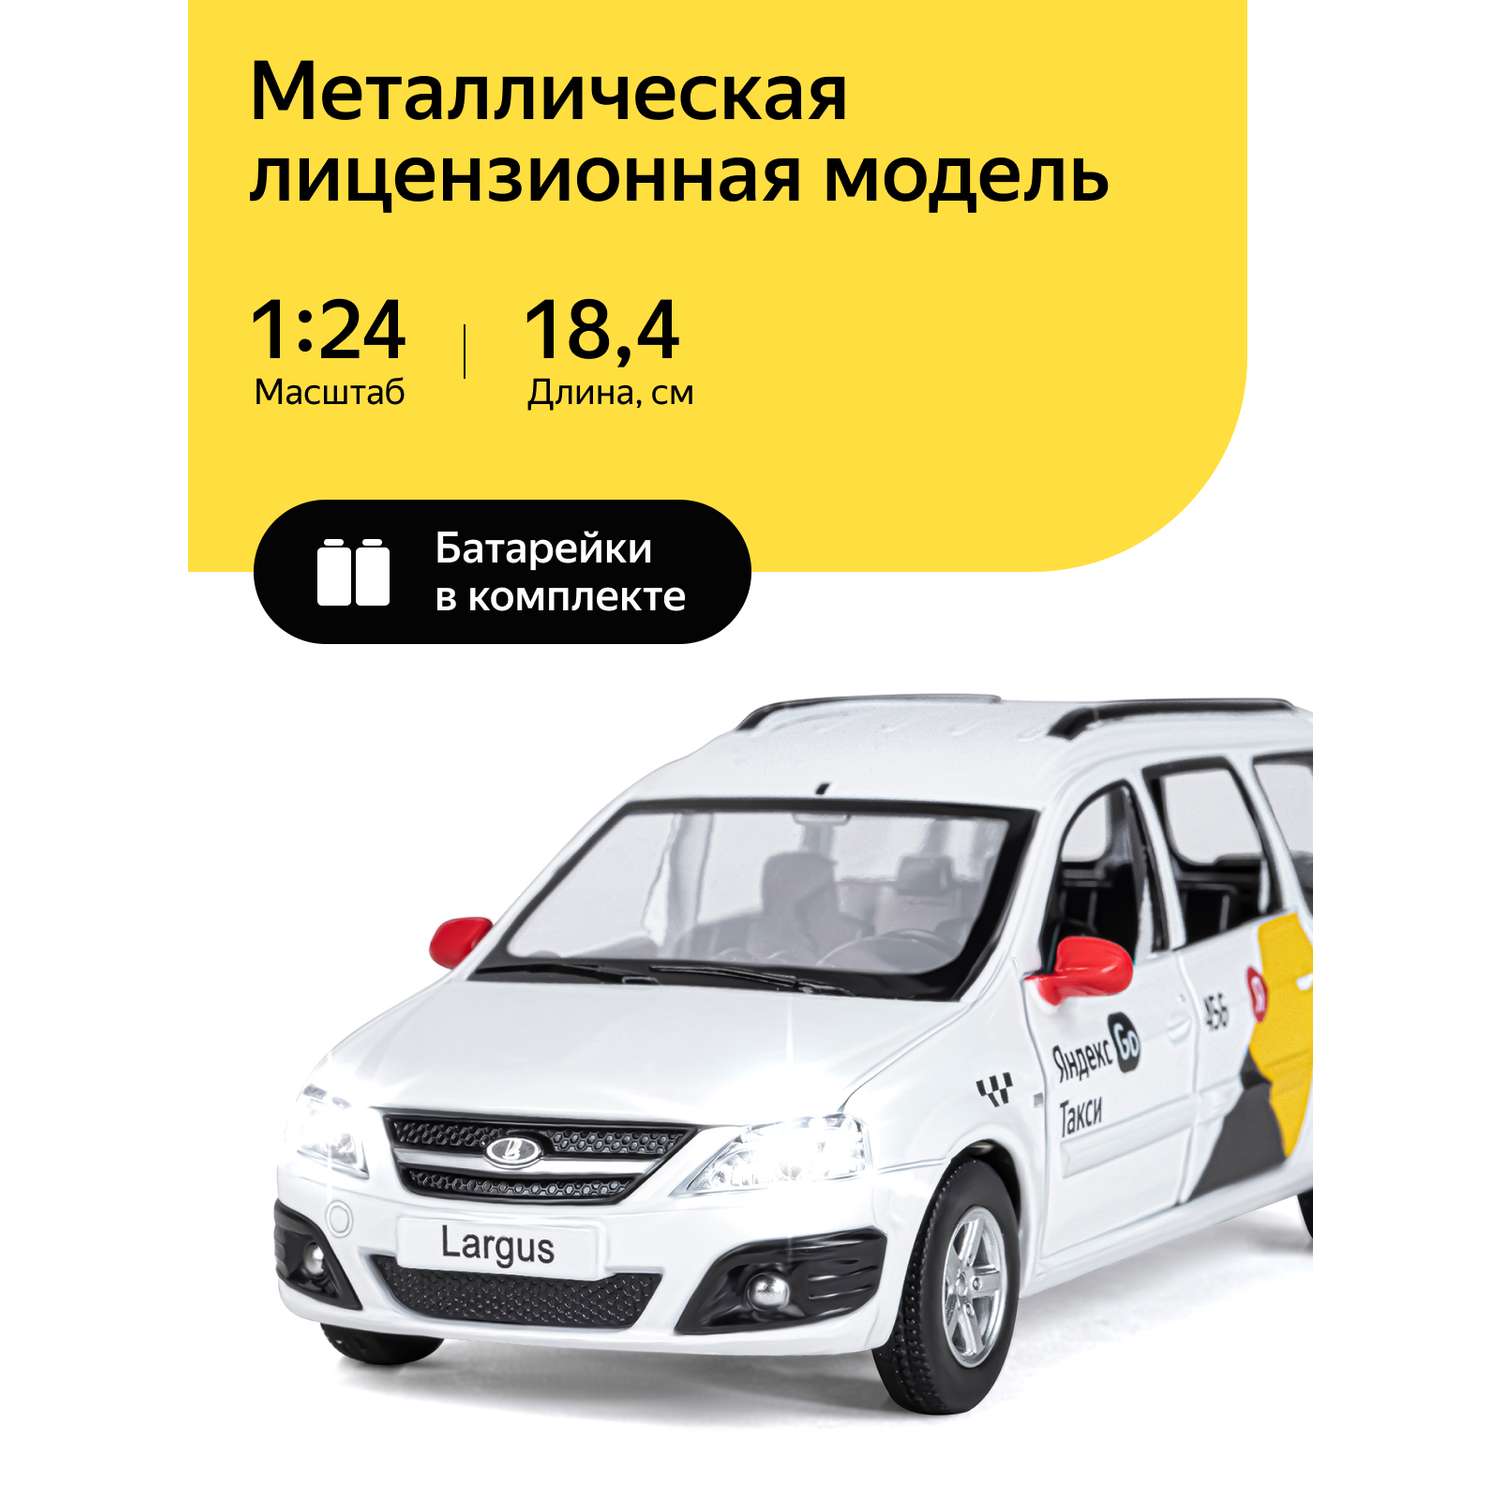 Машинка металлическая Яндекс GO игрушка детская LADA LARGUS 1:24 белый JB1251343 - фото 1